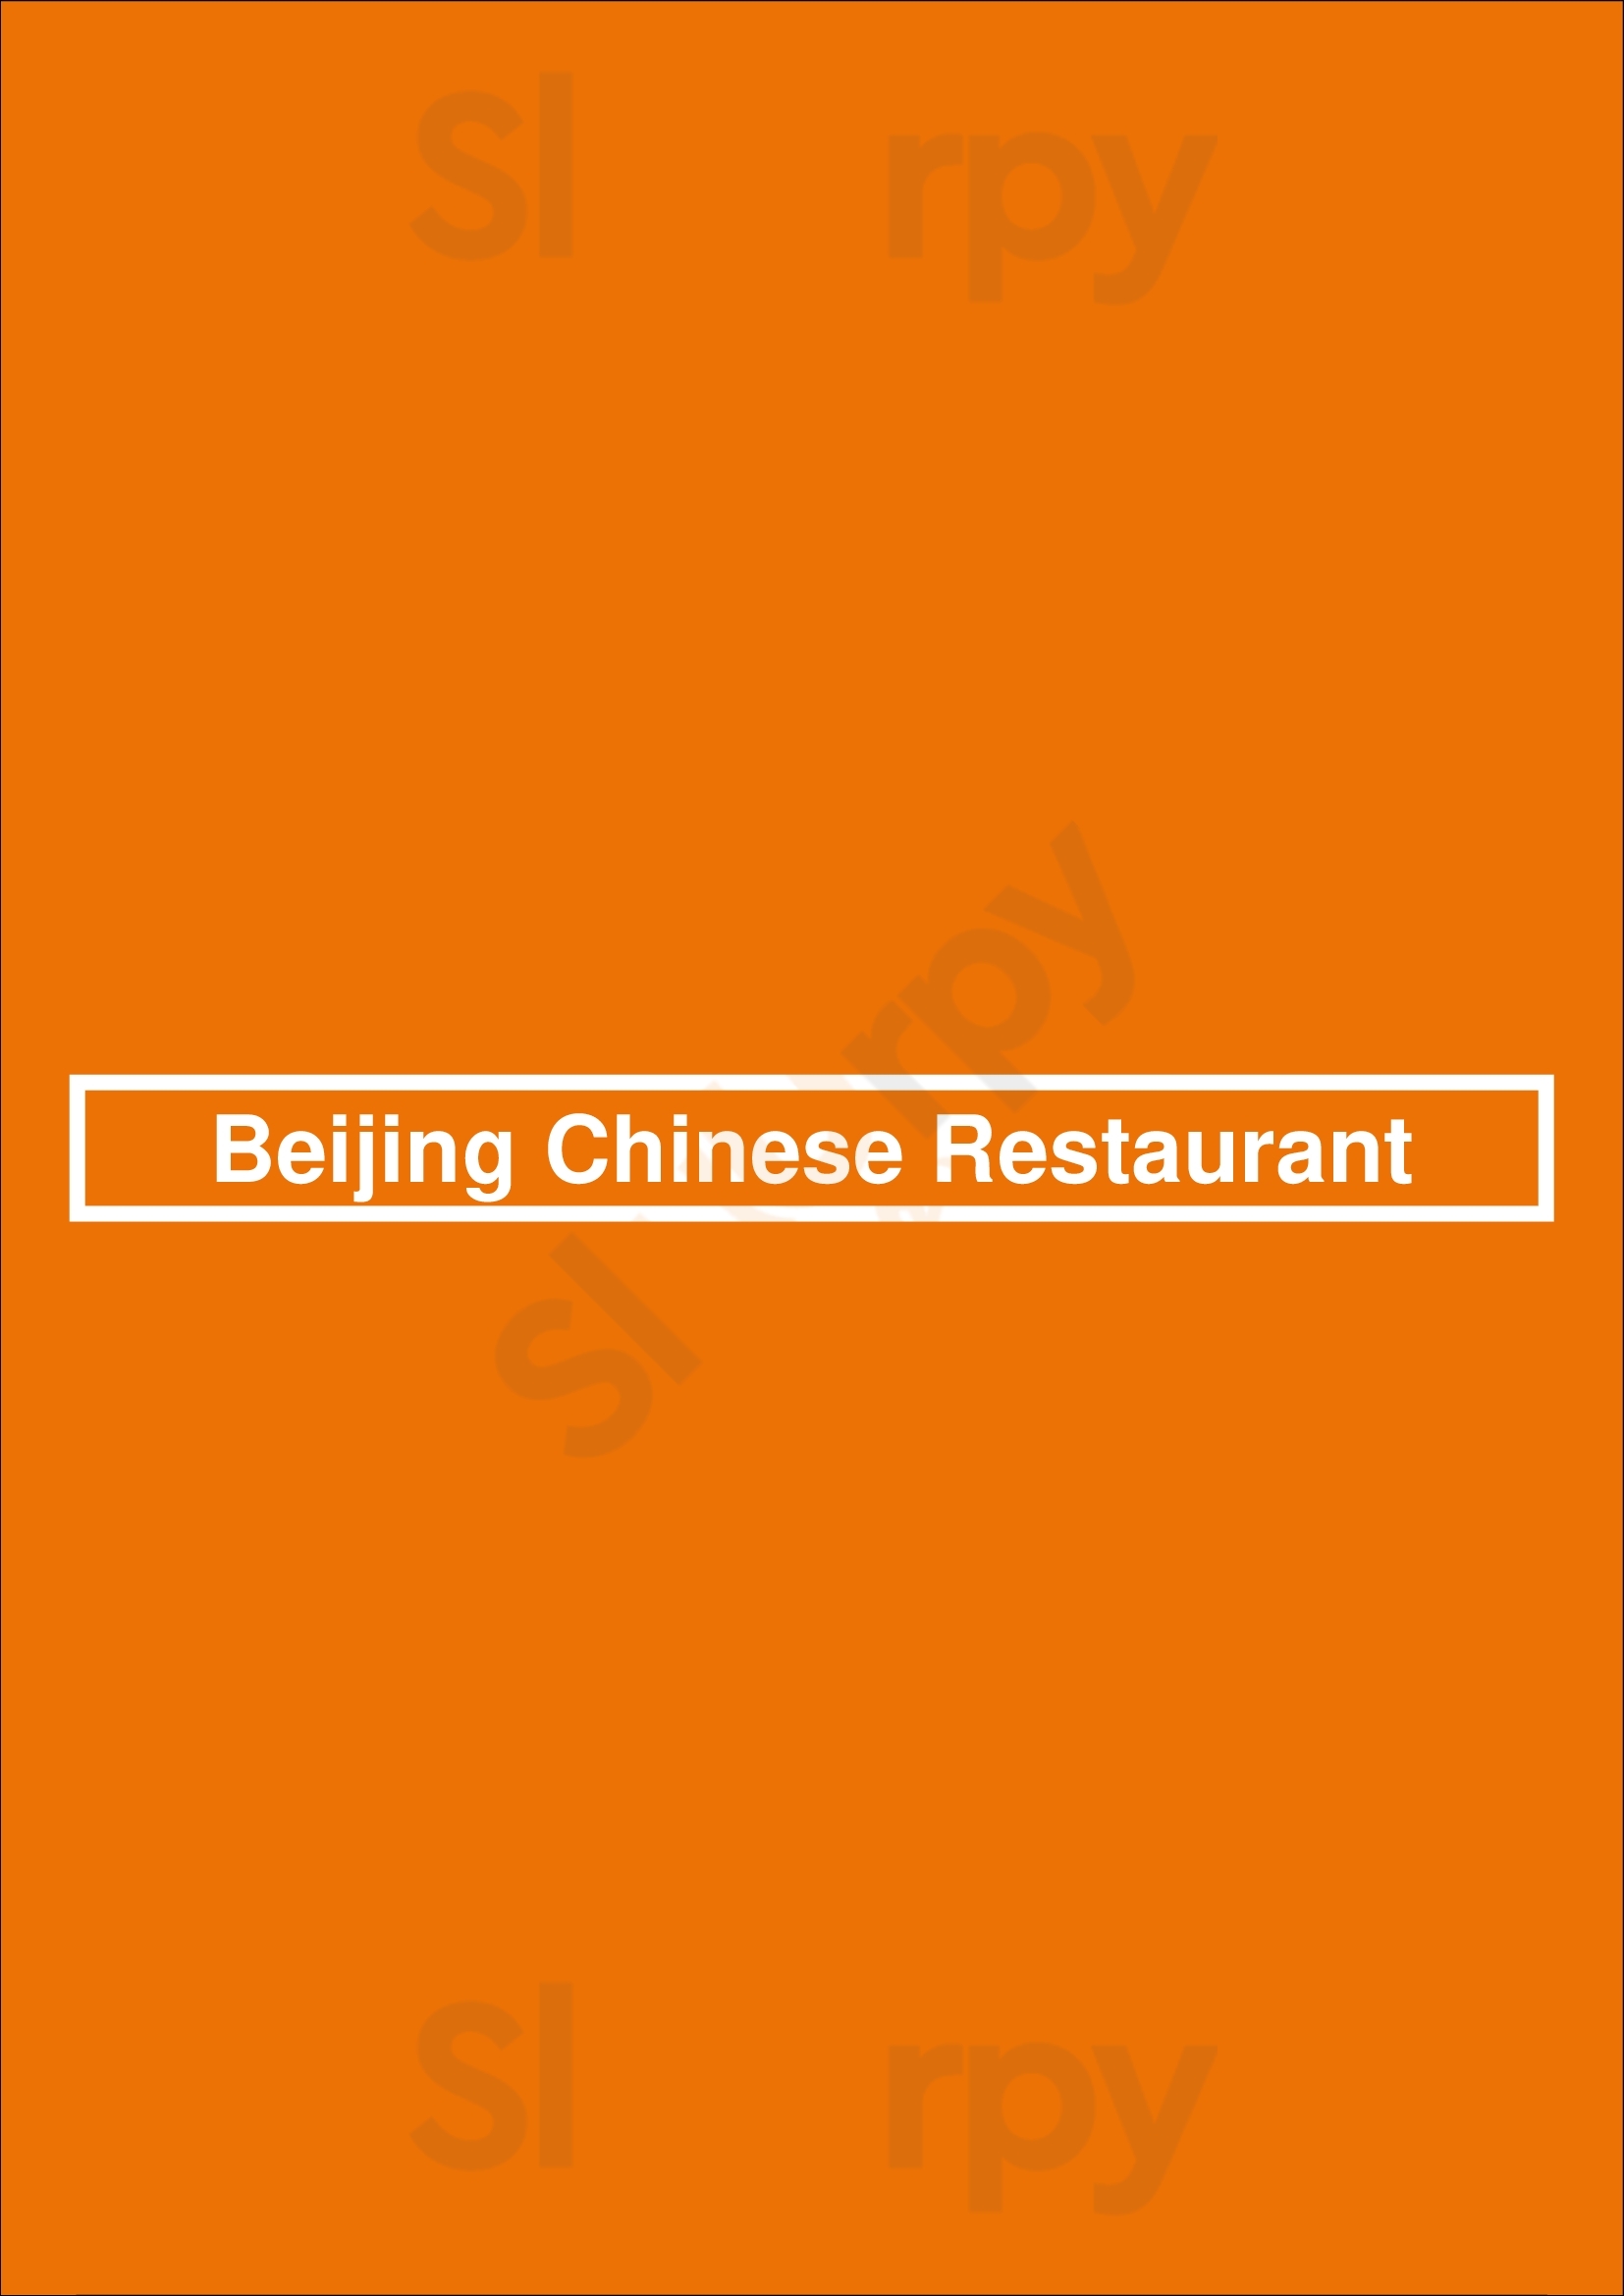 Beijing Chinese Restaurant Houston Menu - 1